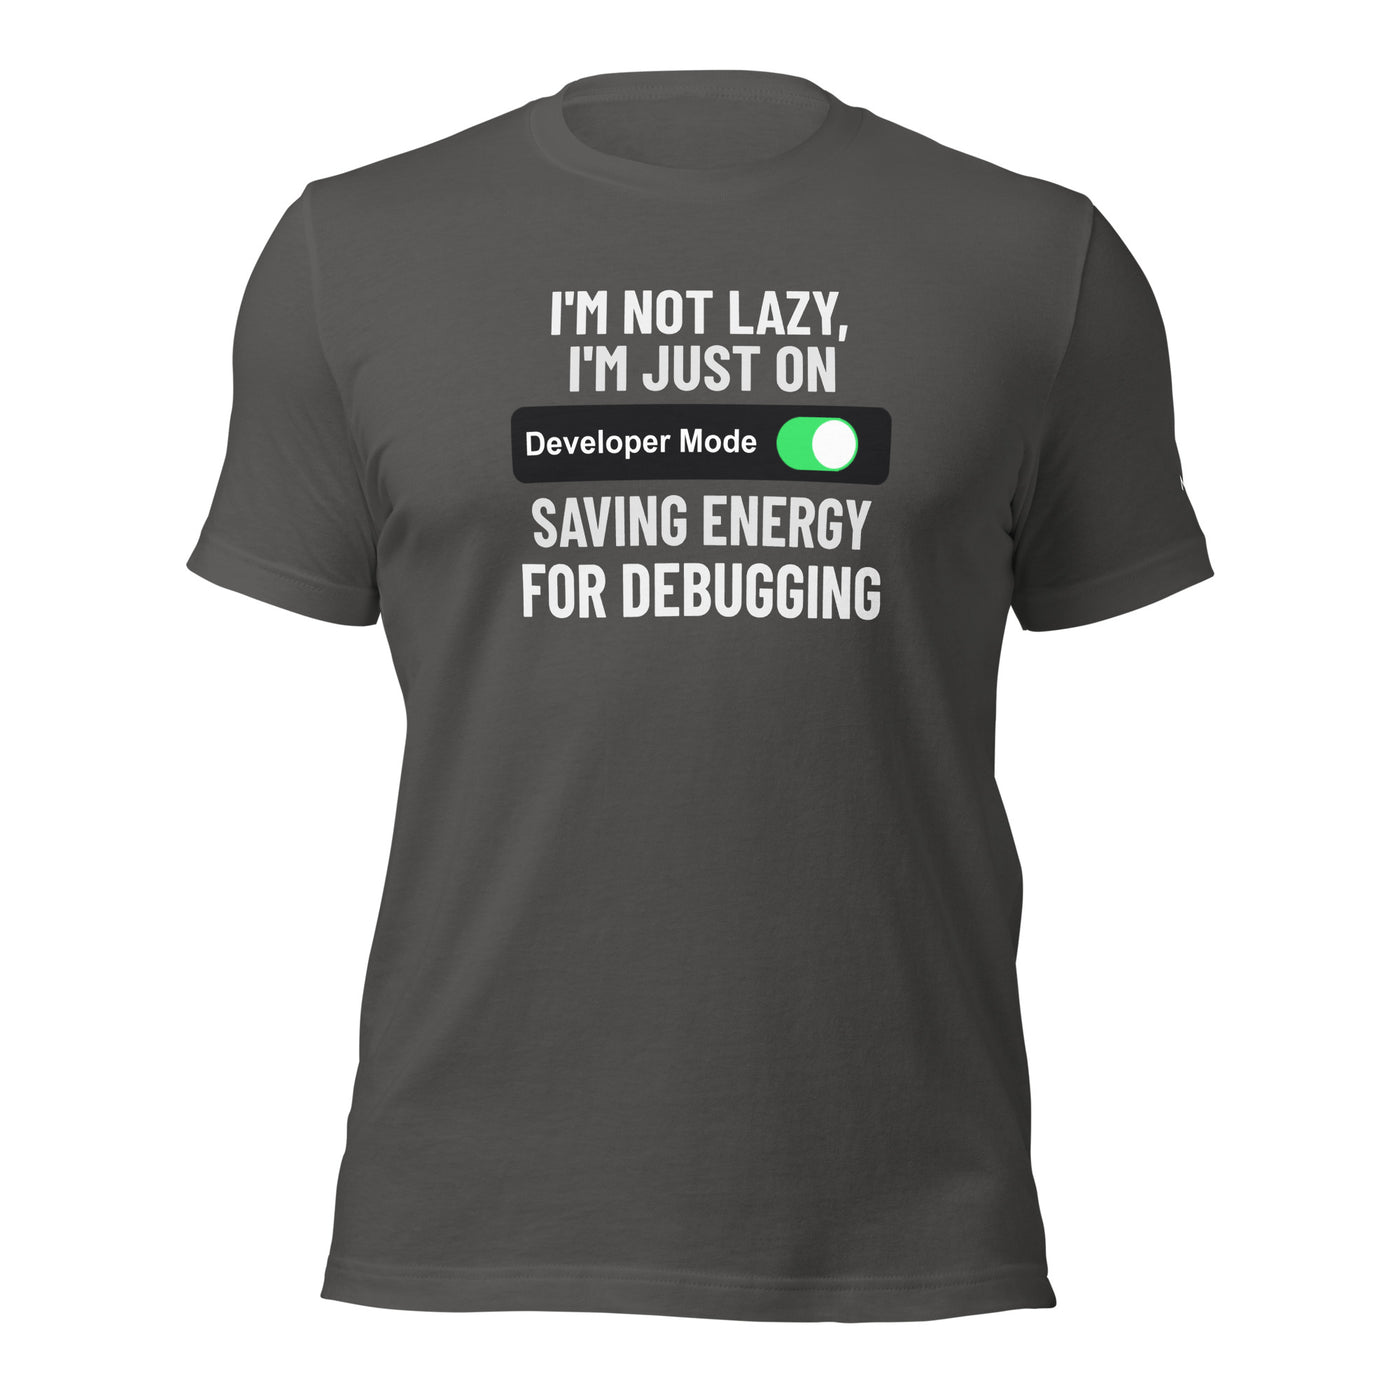 I'm not lazy, I'm just on developer mode - Unisex t-shirt